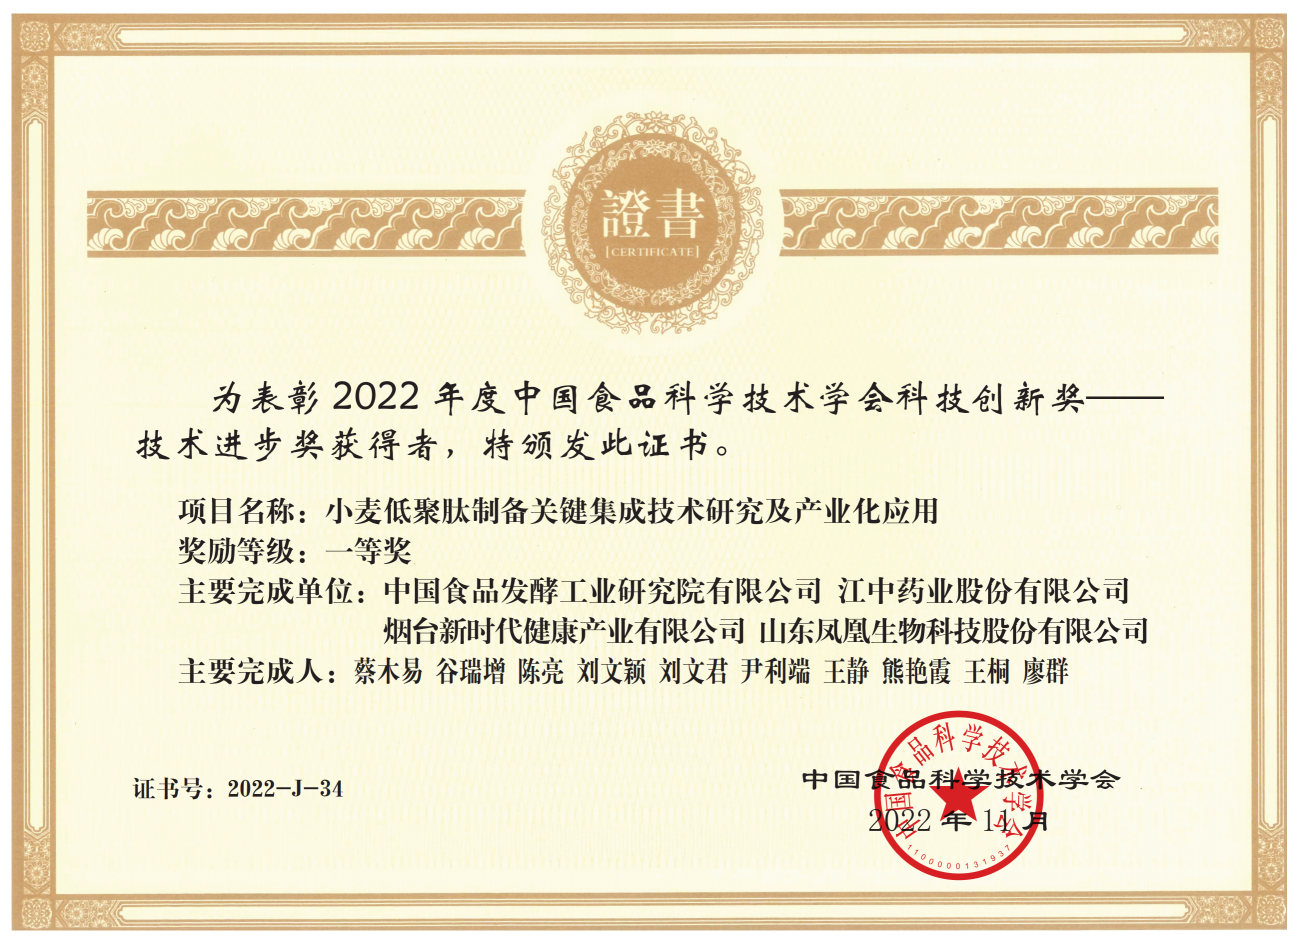 中国食品院项目成果荣获2022年度“中国食品科学技术学会科技创新奖”一等奖